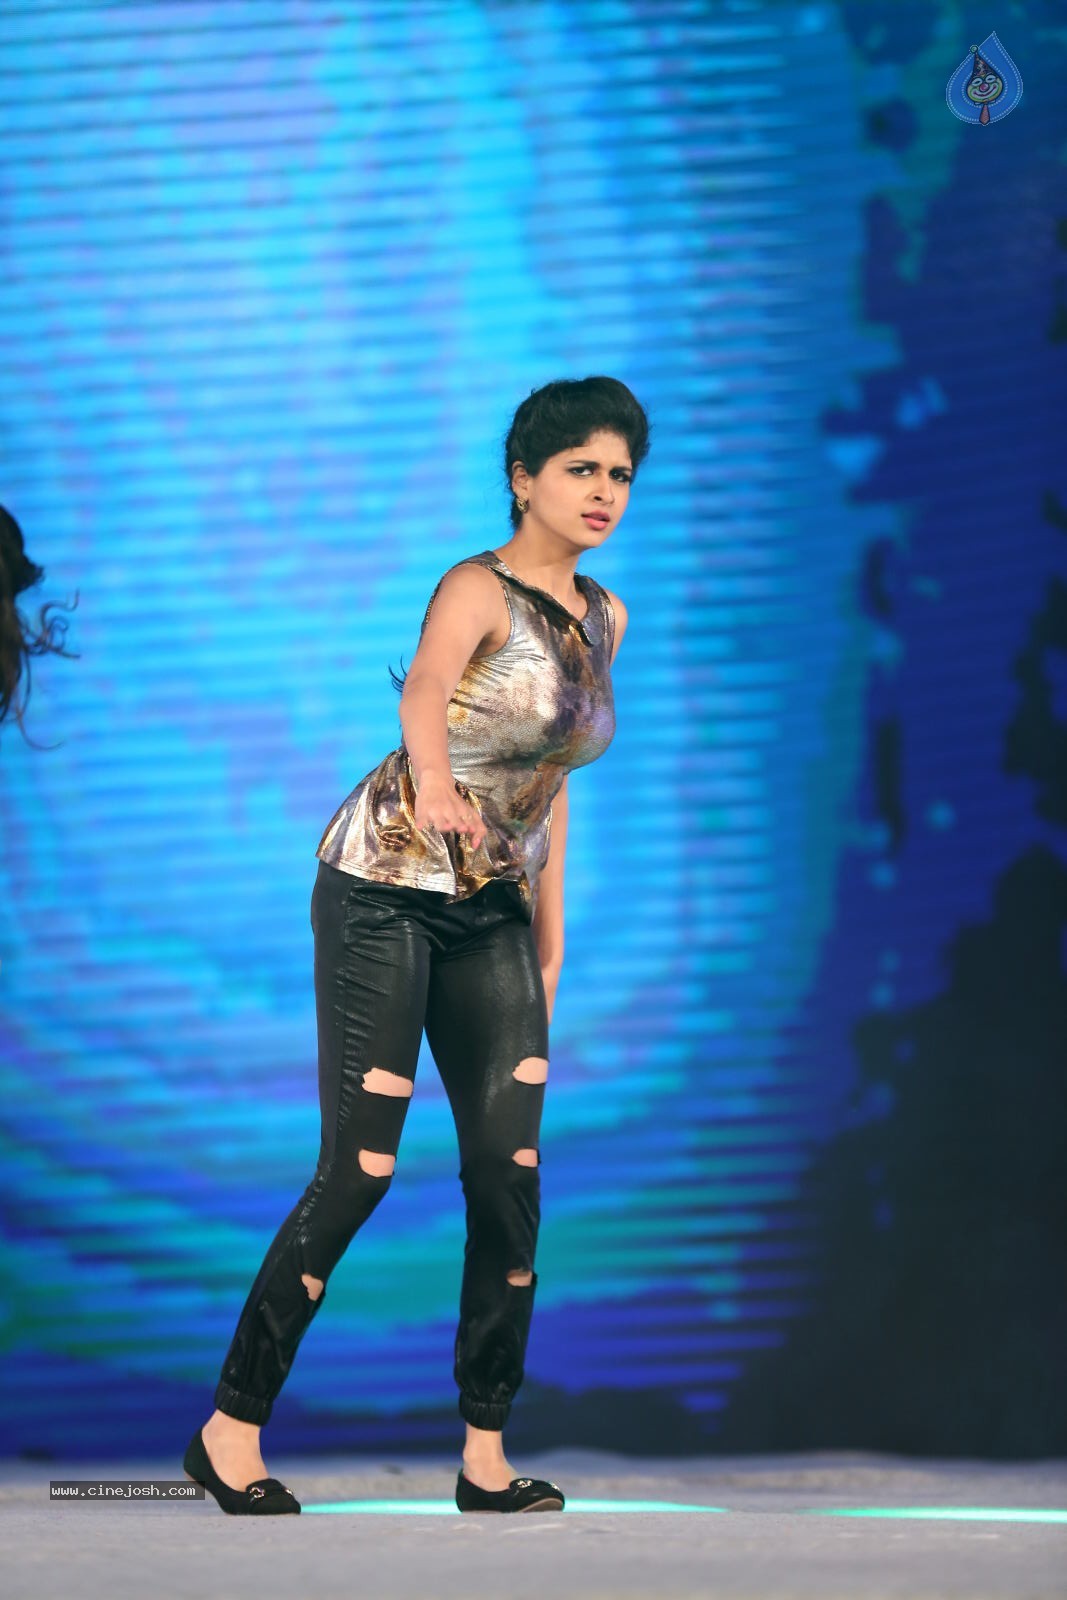 Naveena Dance Performance at Gama Awards 2014 - 12 / 18 photos